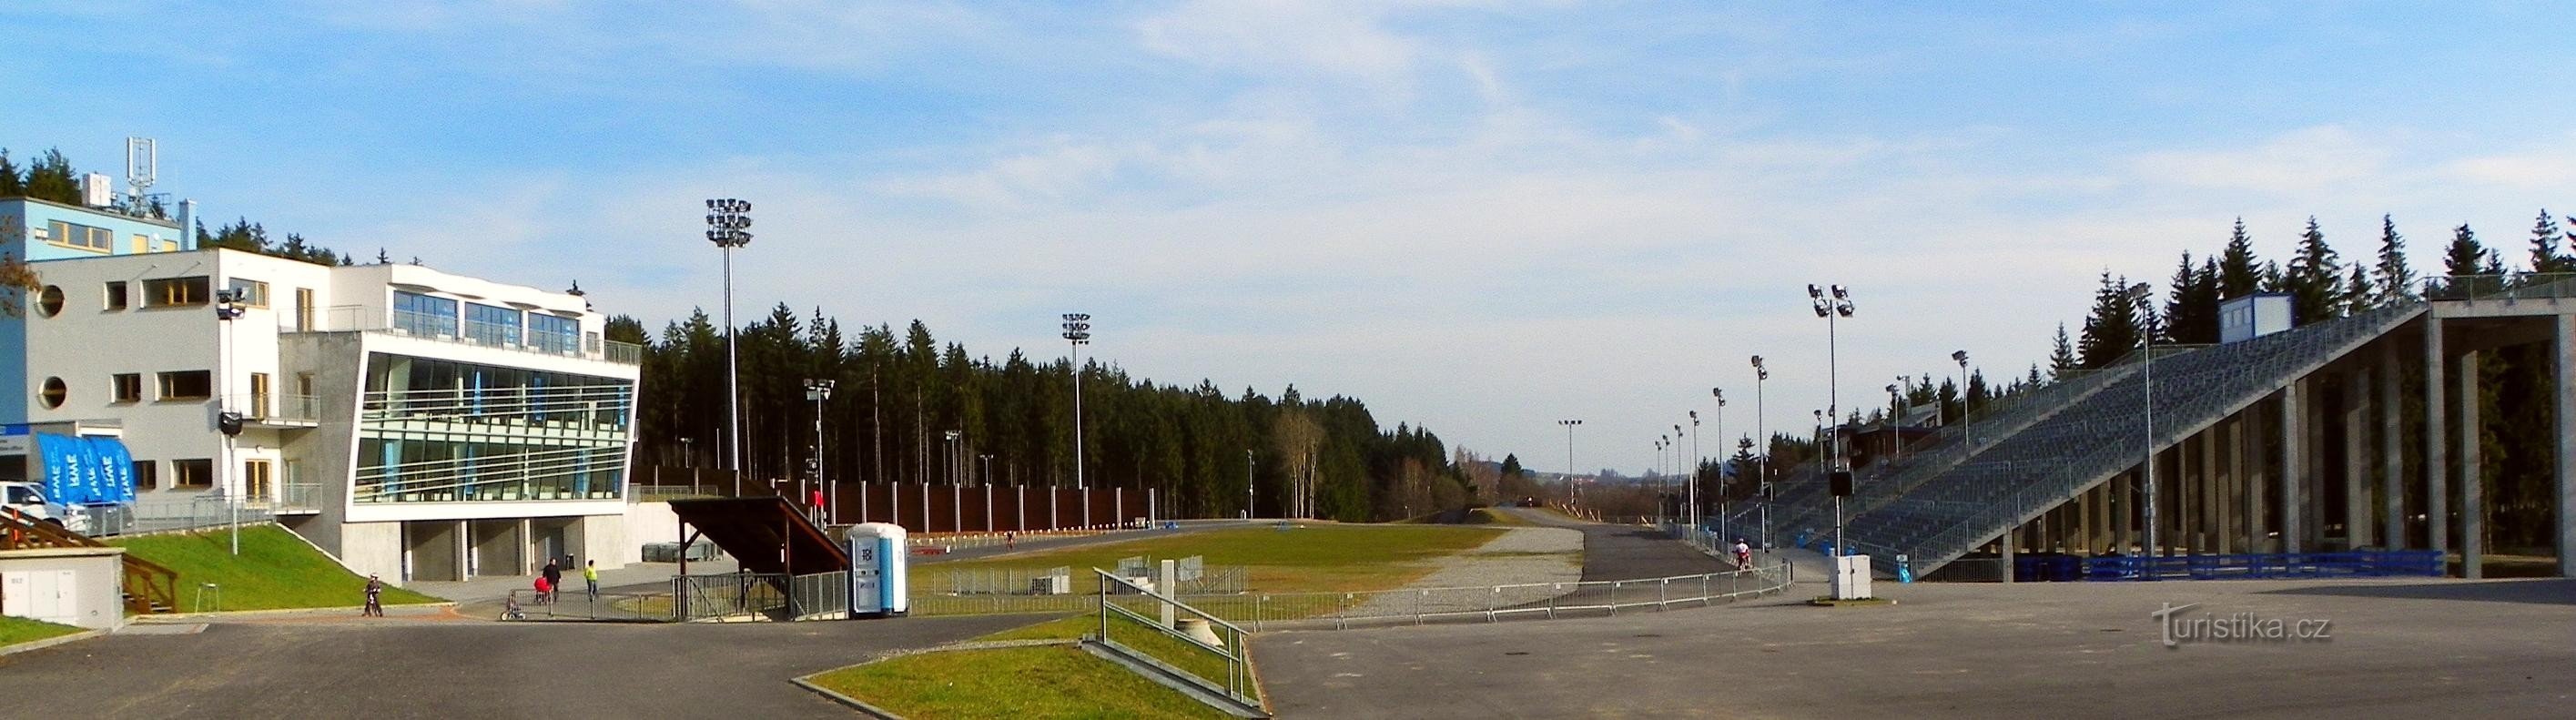 Arena Vysočina in estate